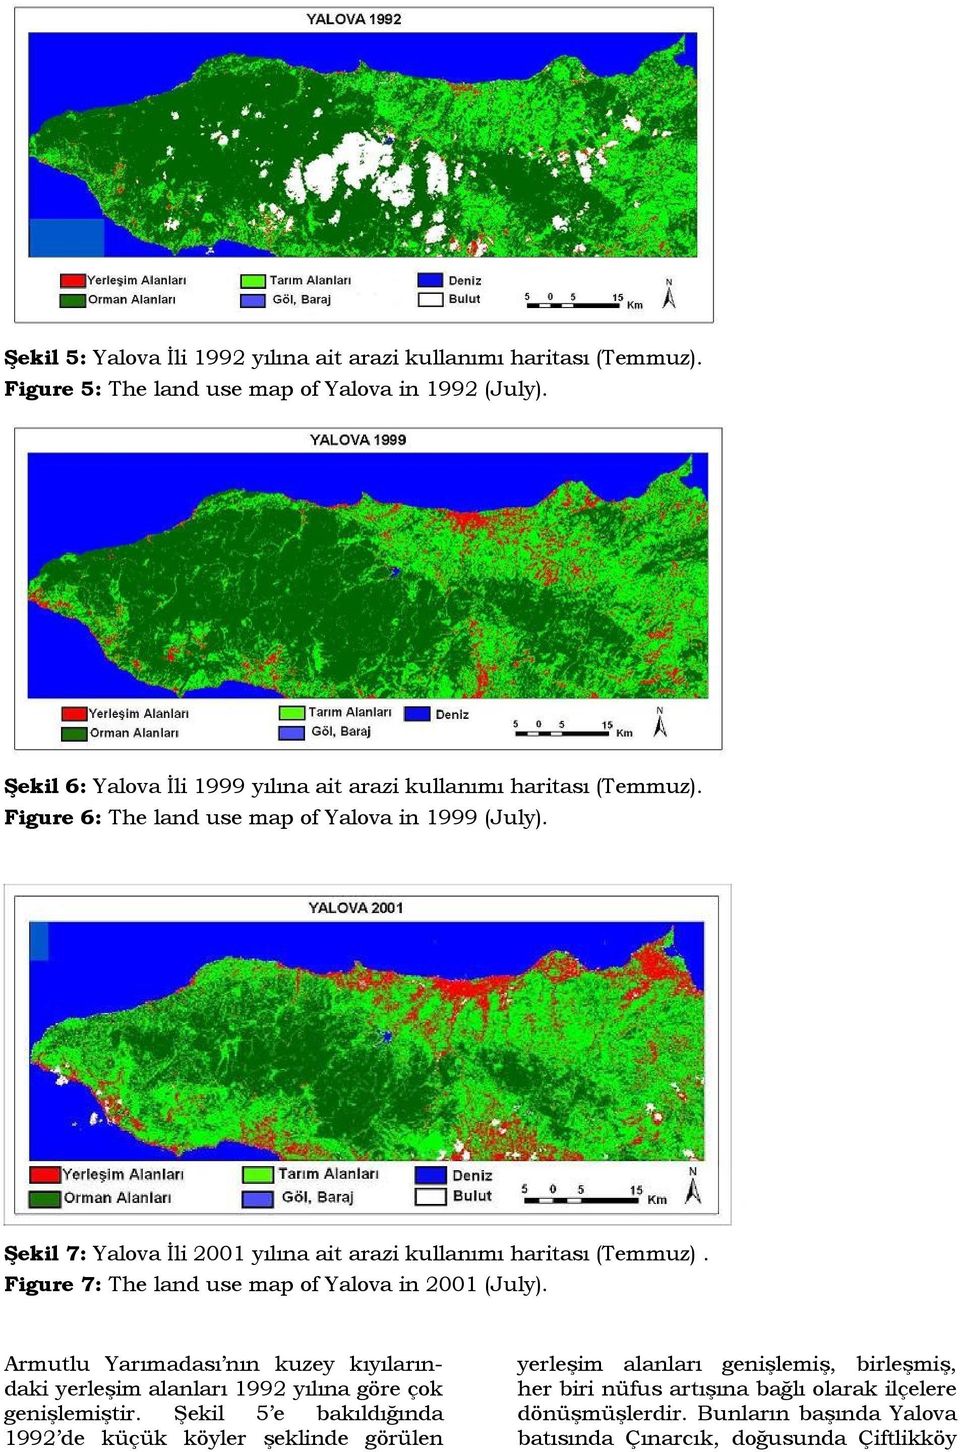 Şekil 7: Yalova İli 2001 yılına ait arazi kullanımı haritası (Temmuz). Figure 7: The land use map of Yalova in 2001 (July).